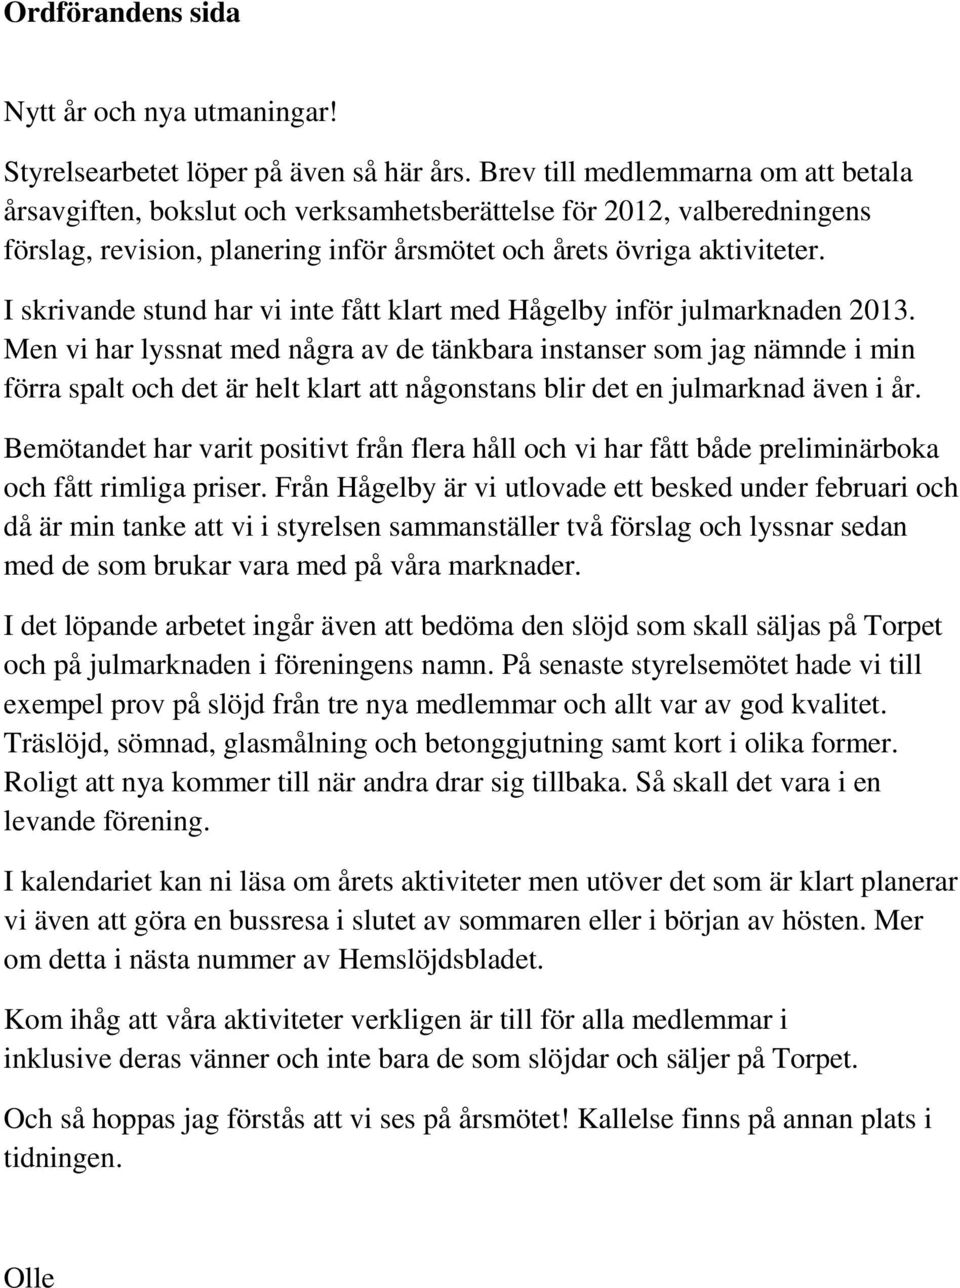 I skrivande stund har vi inte fått klart med Hågelby inför julmarknaden 2013.